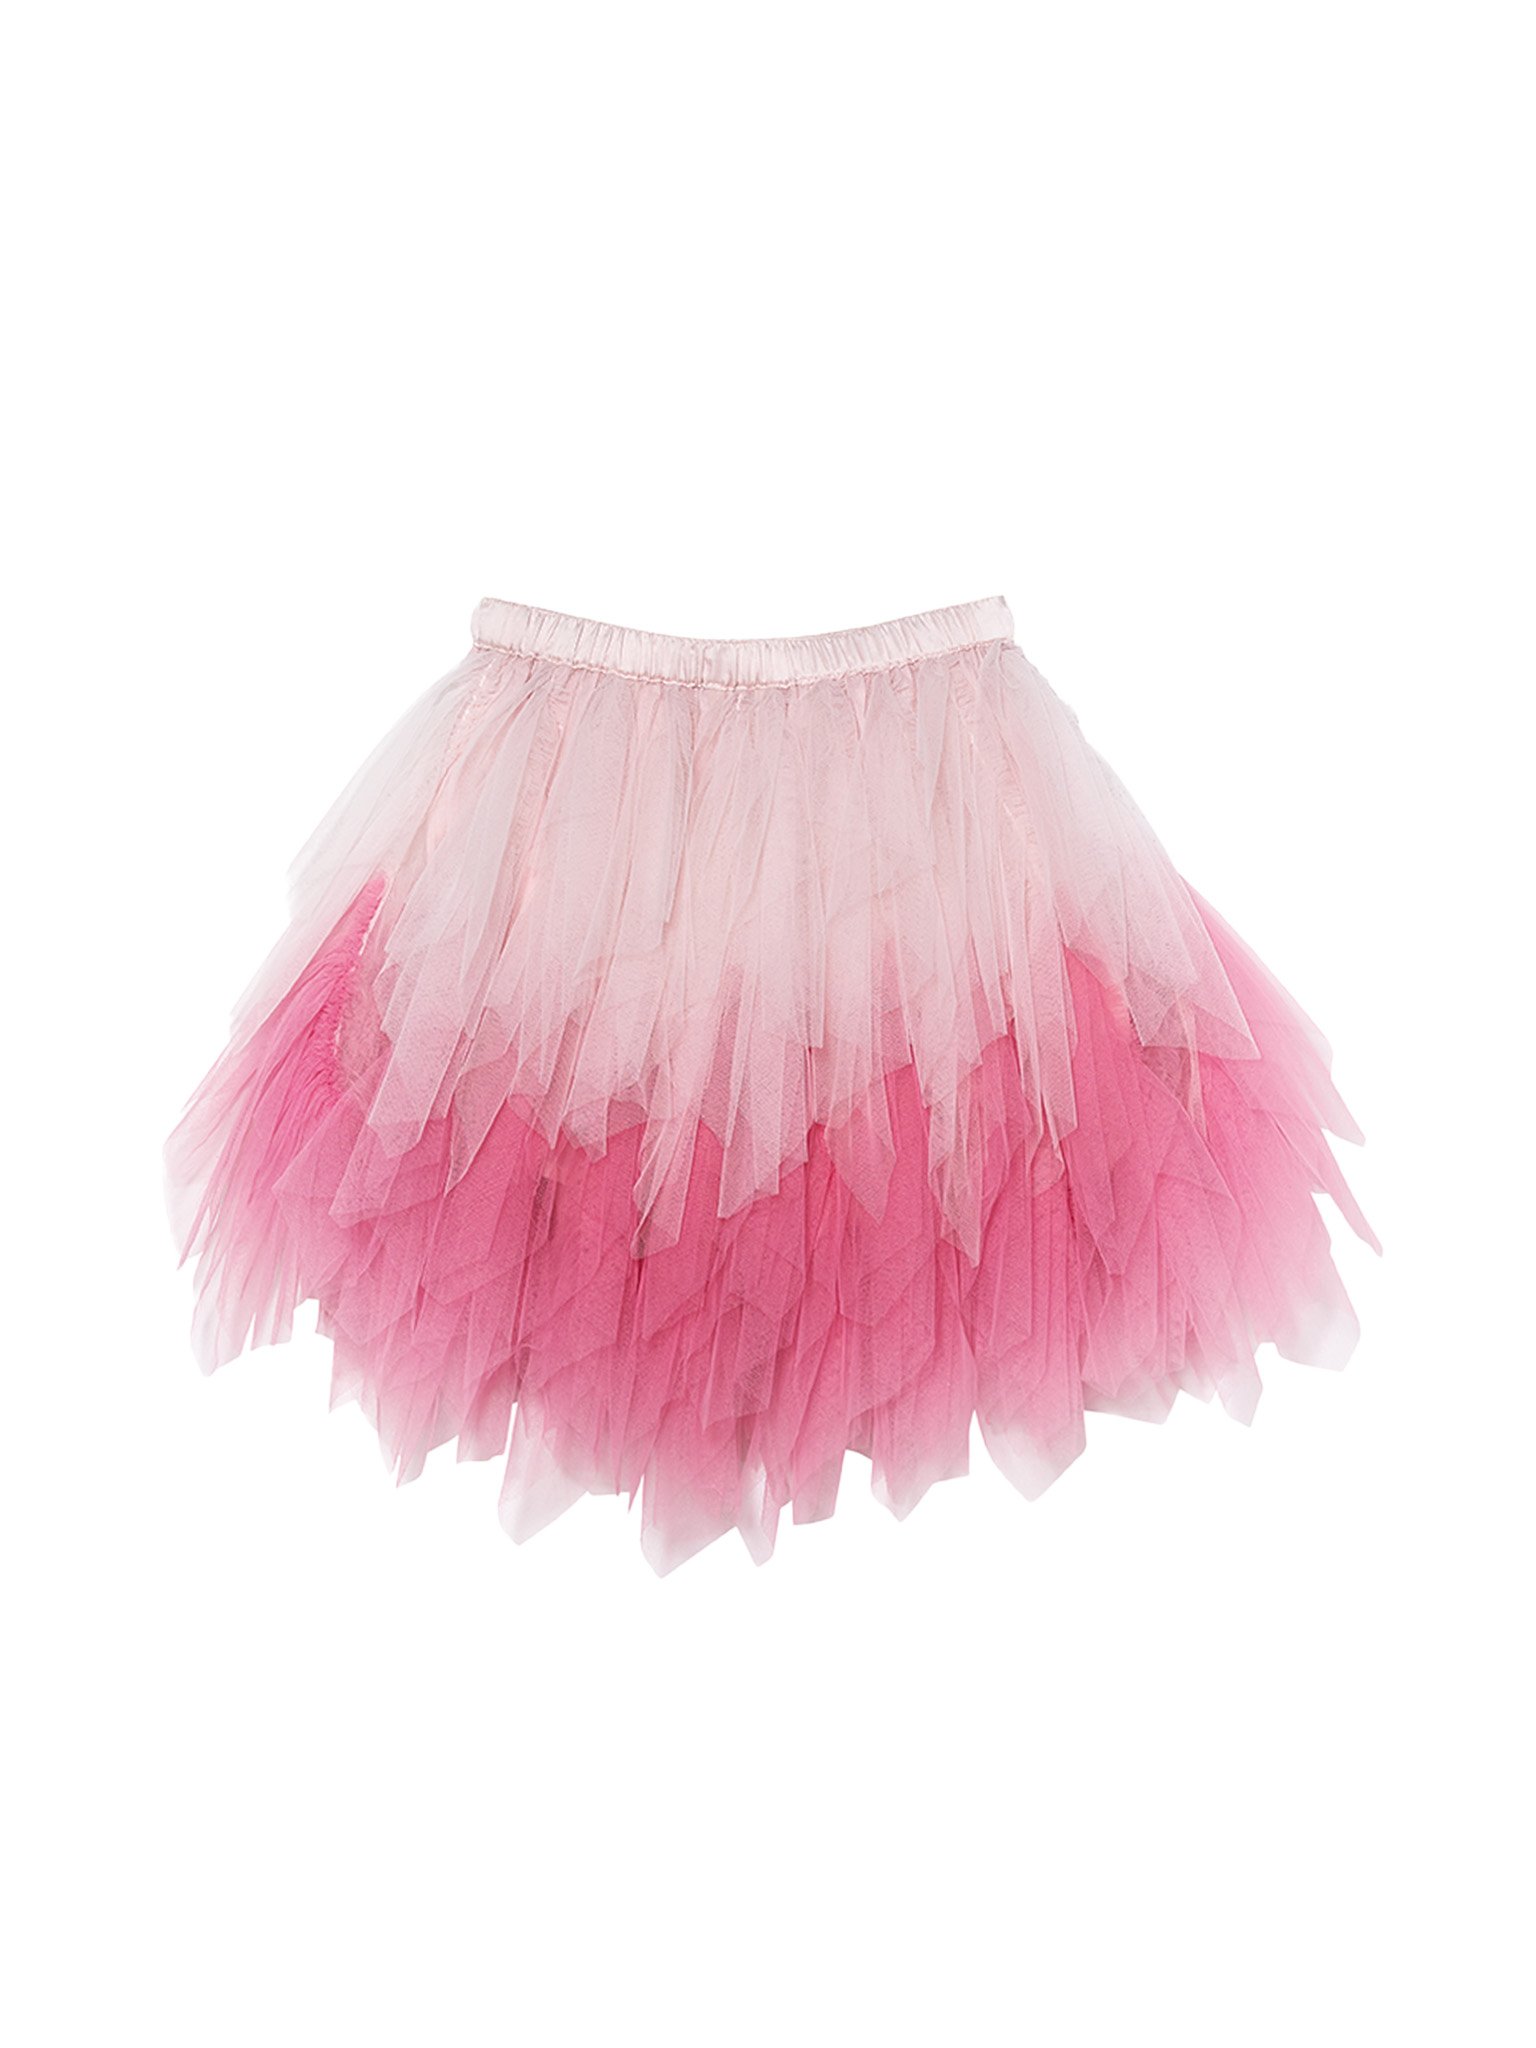 Barbie Springs Skirt